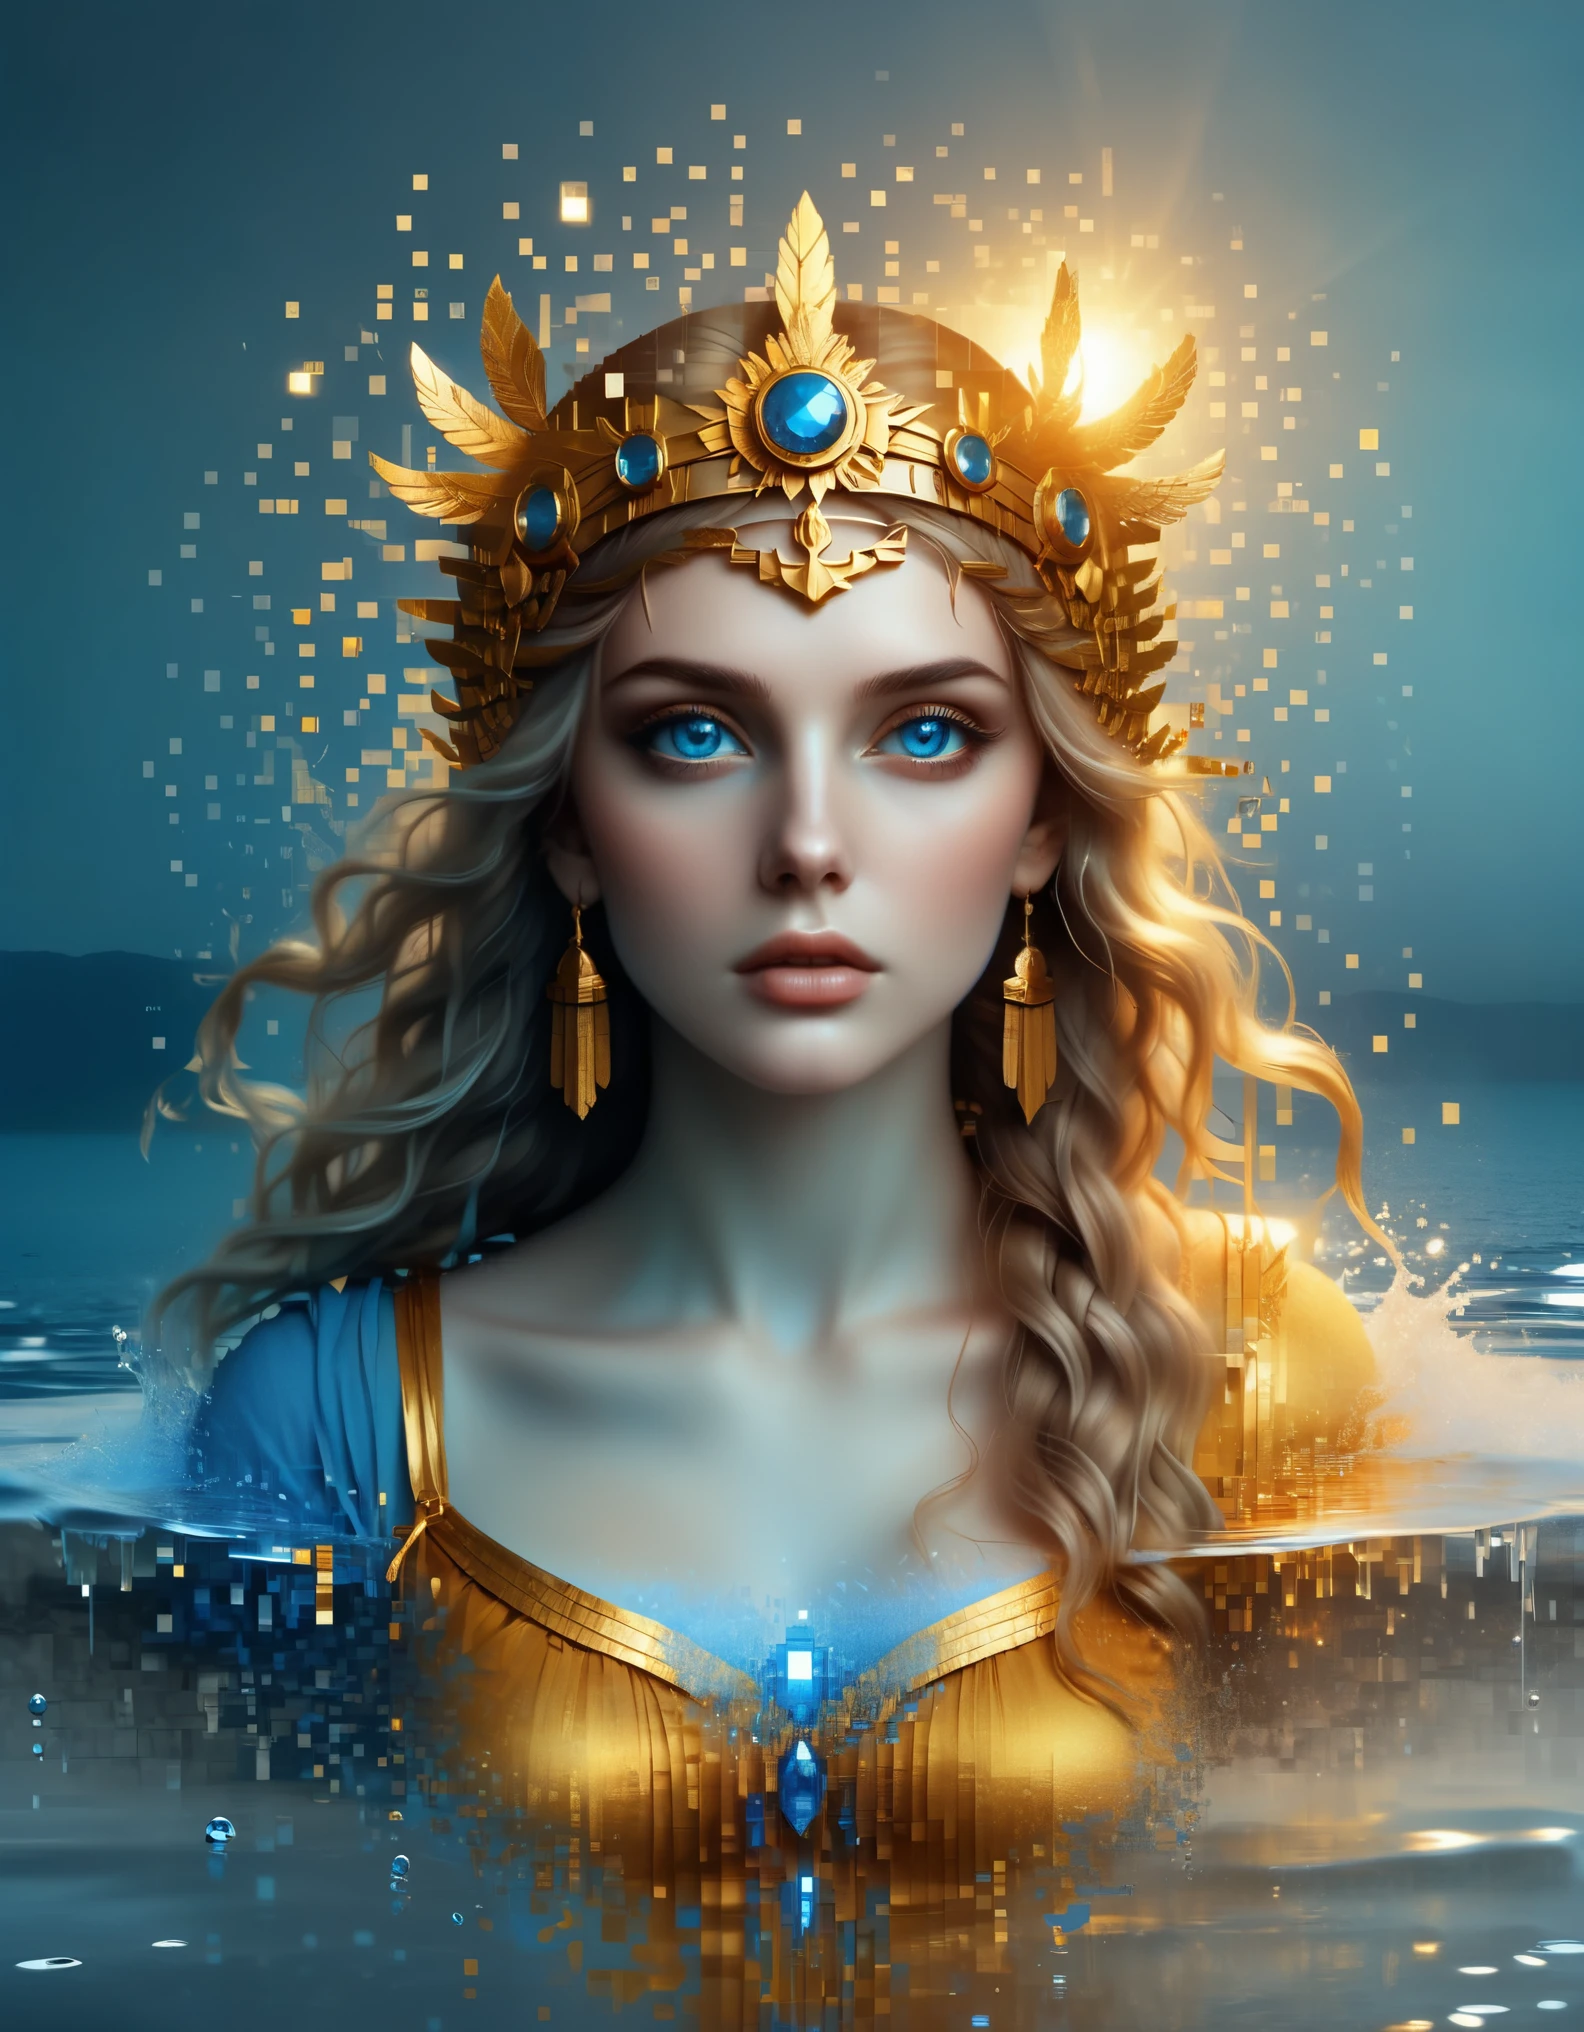 pixel art，im Stil von Caras Ionut, schöne Details， schöne Details，Schöne Göttin Athene in einem blauen Farbverlauf aus aufgelösten Pixeln，（ganzer Körper），Außergewöhnlich schöne blaue Augen，allmählich zersetzen，Goldener Sonnenschein scheint in，Teilreflexion im Wasser，